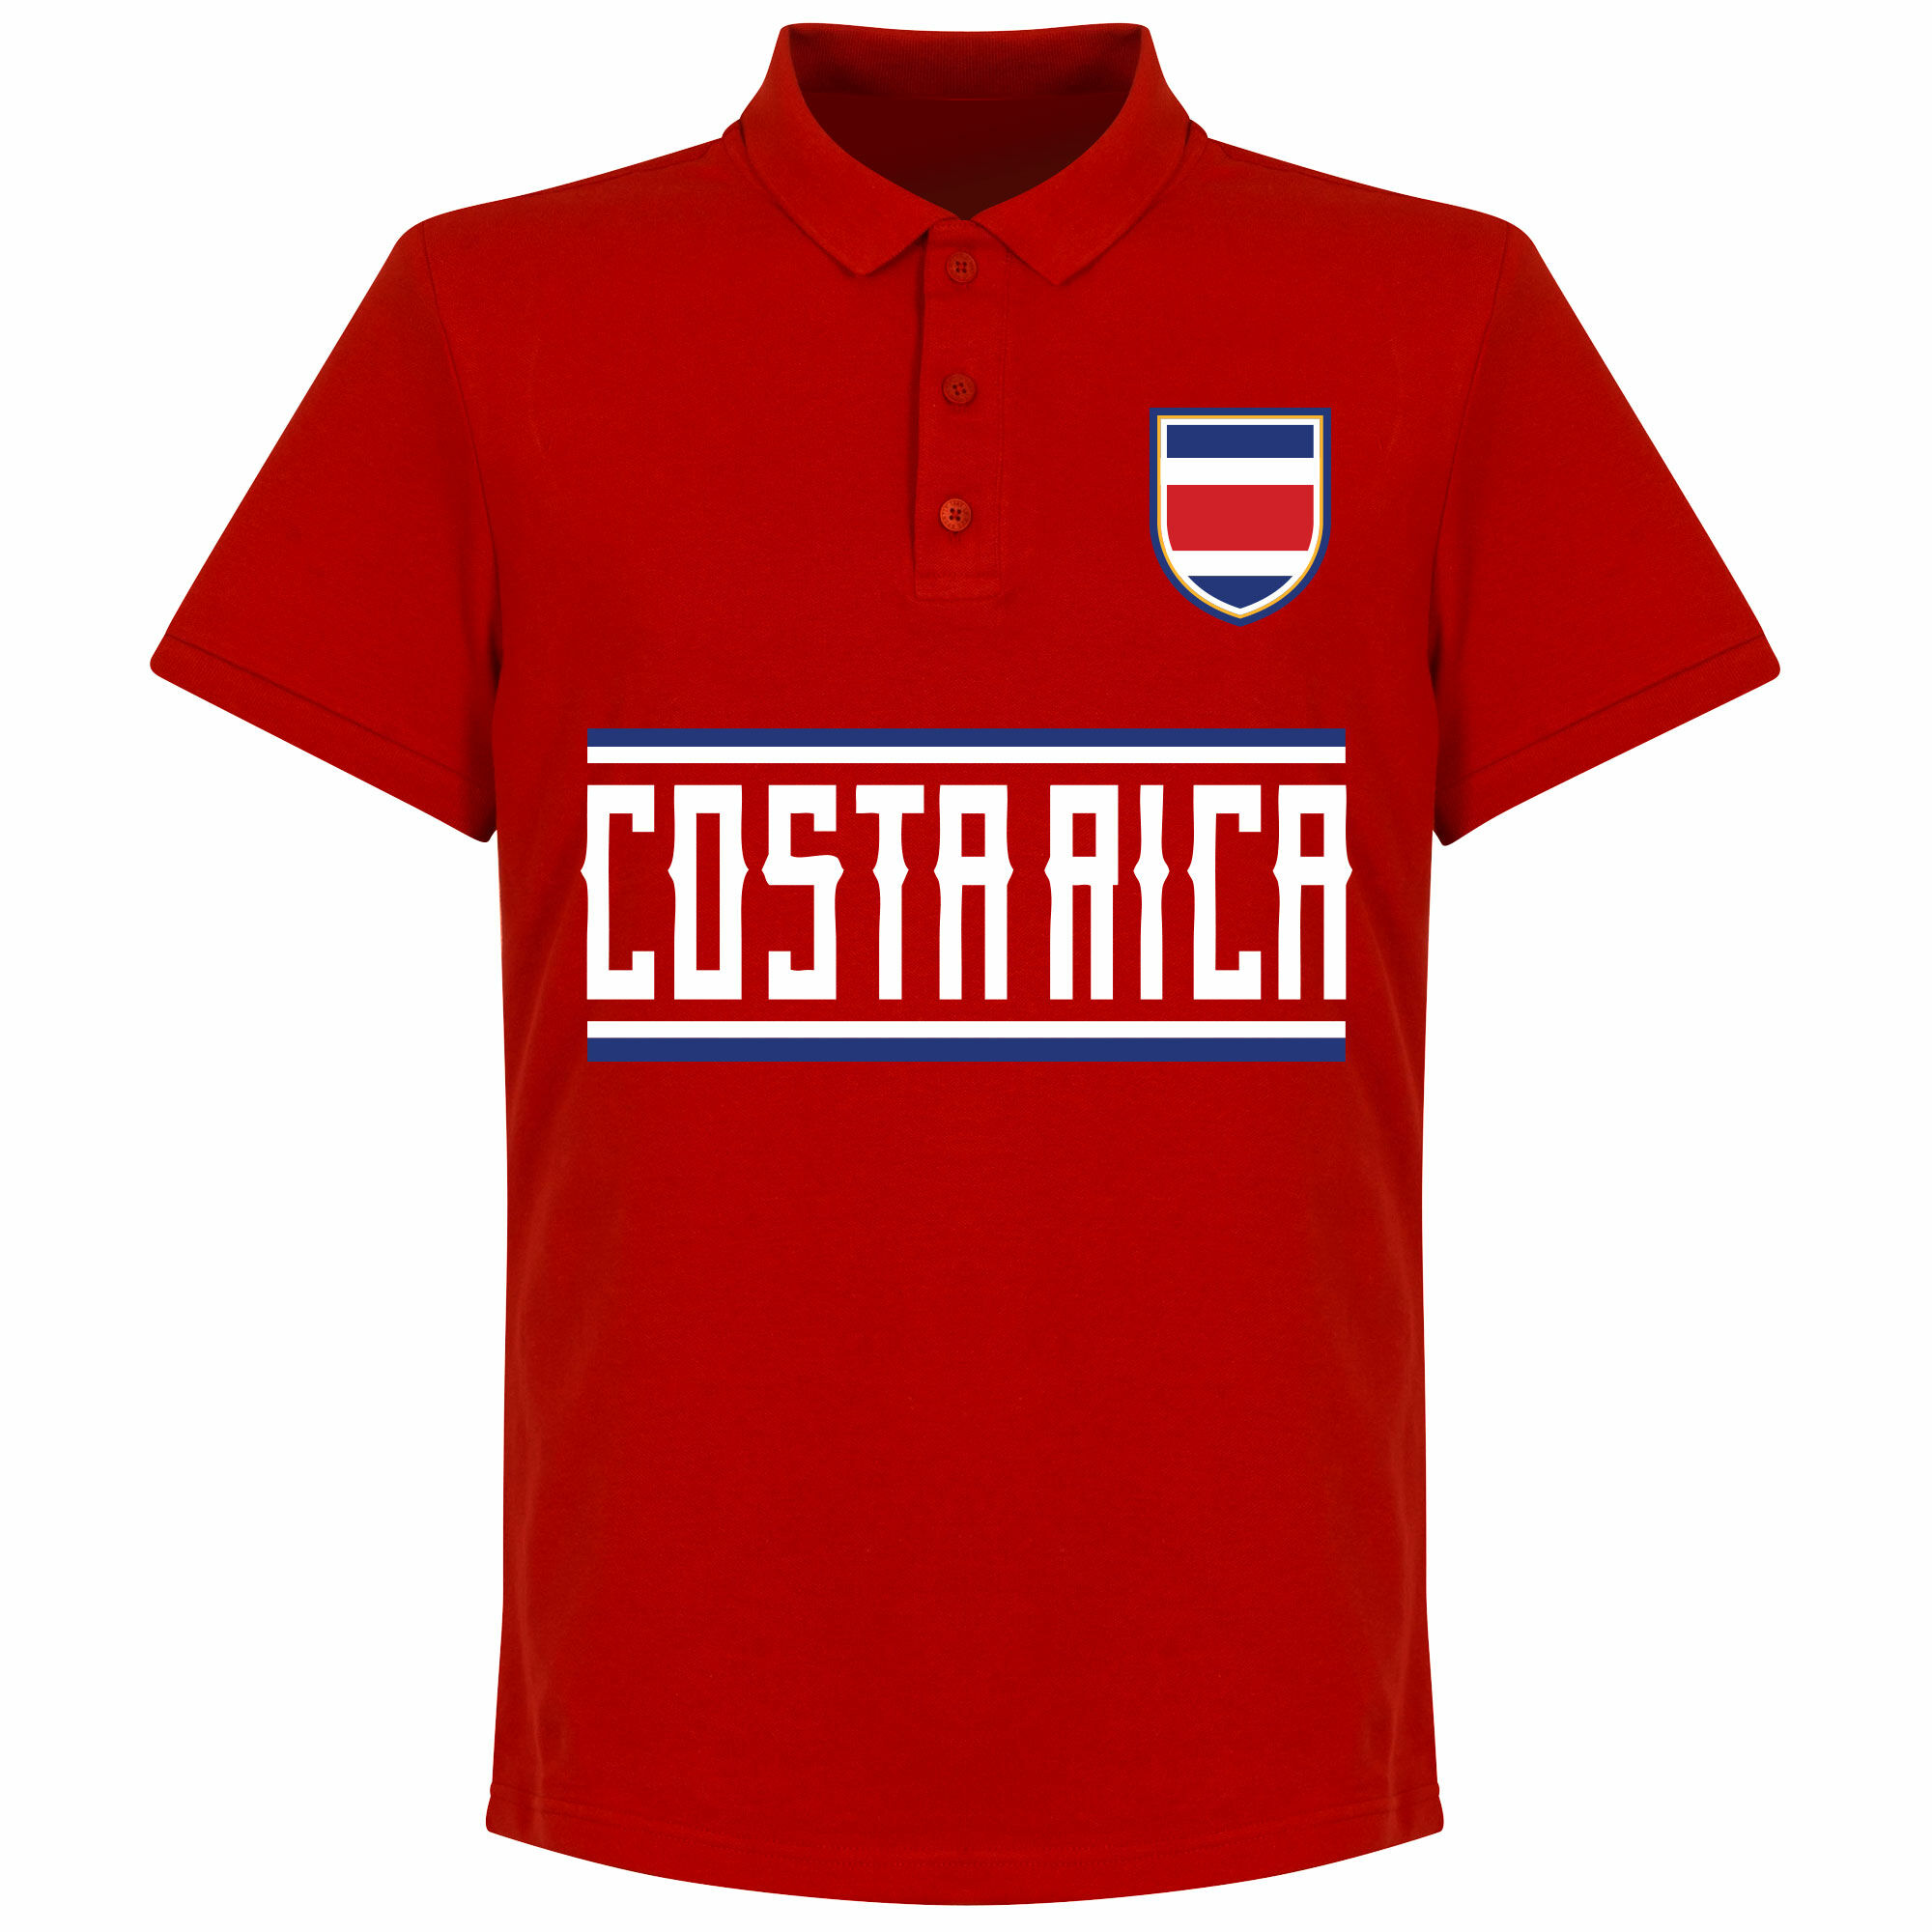 Kostarika - Tričko s límečkem - červené